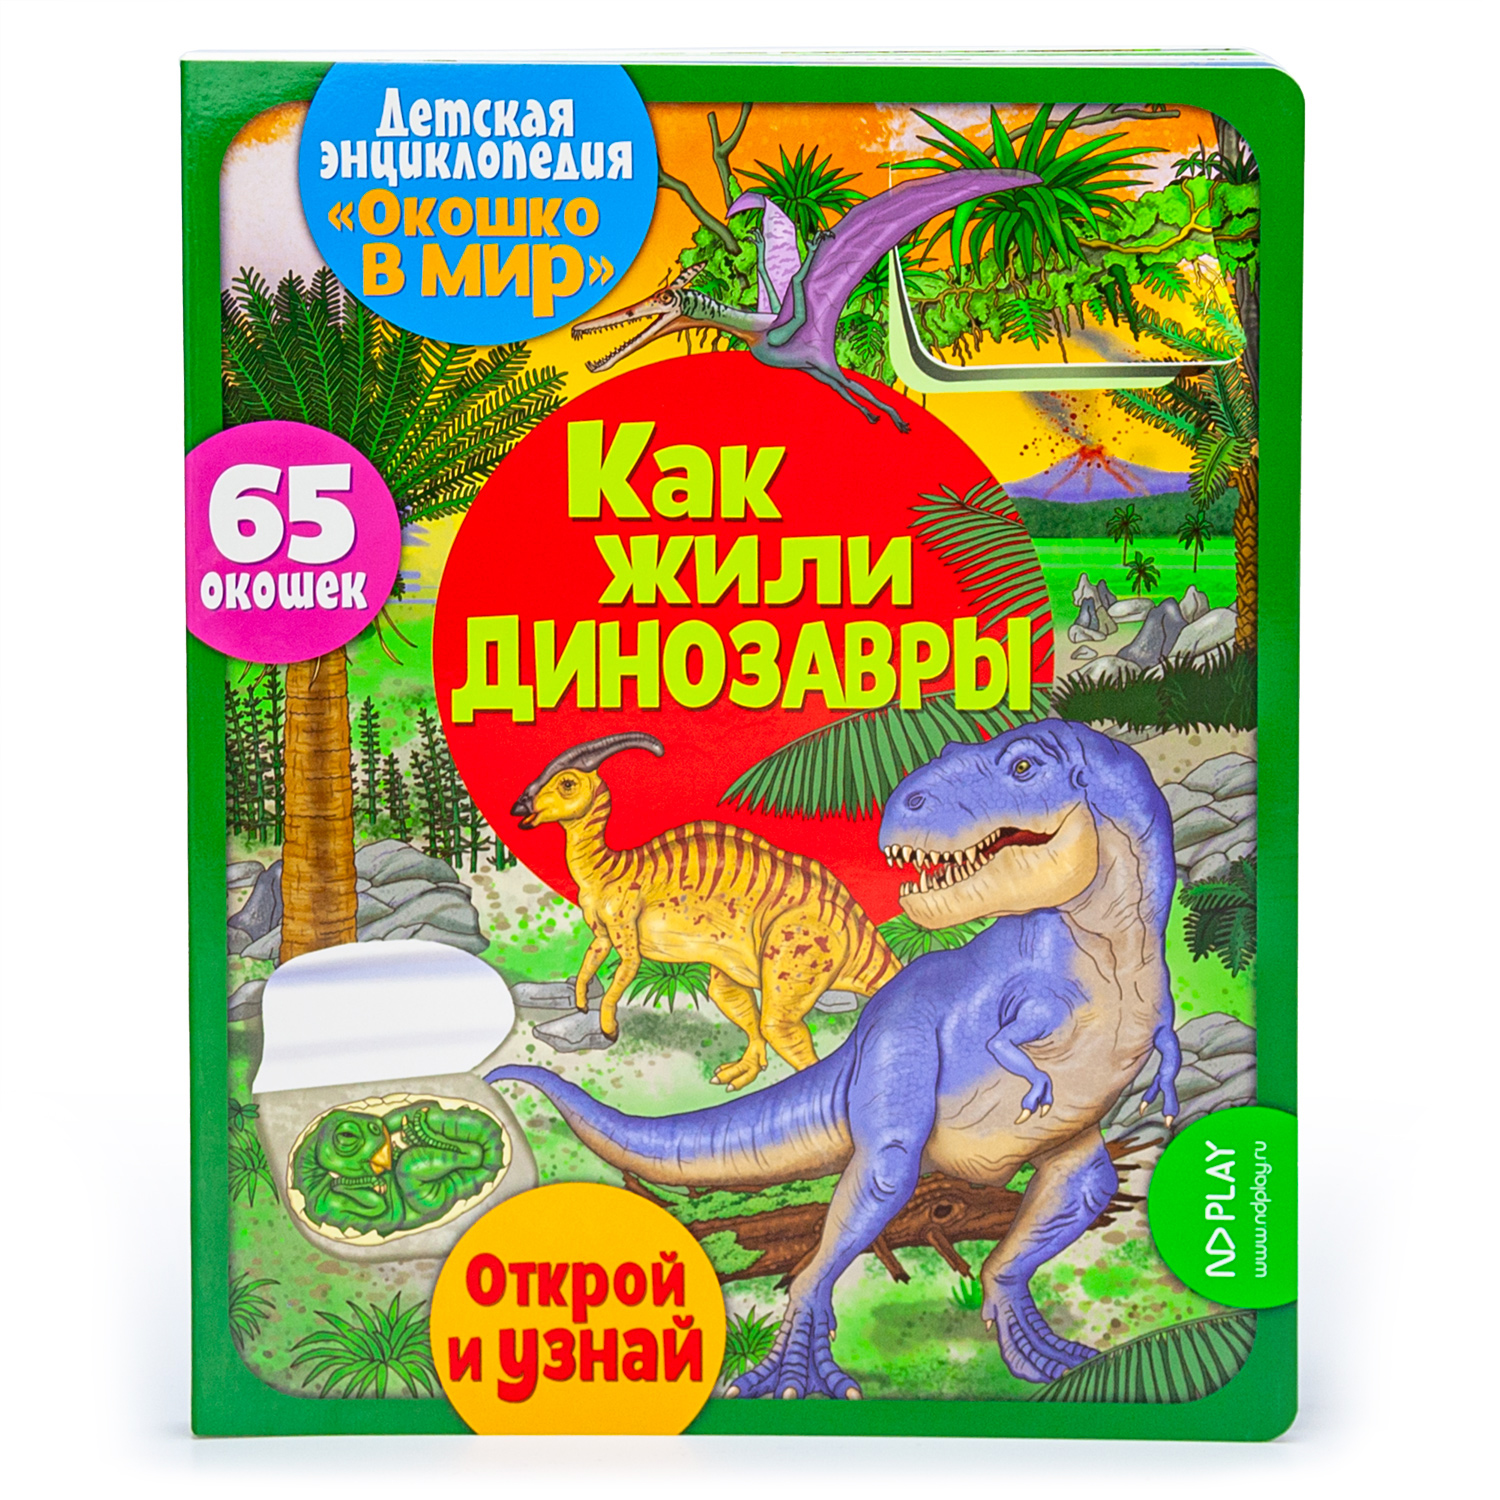 Книга ND PLAY Окошко в мир Как жили динозавры - фото 1